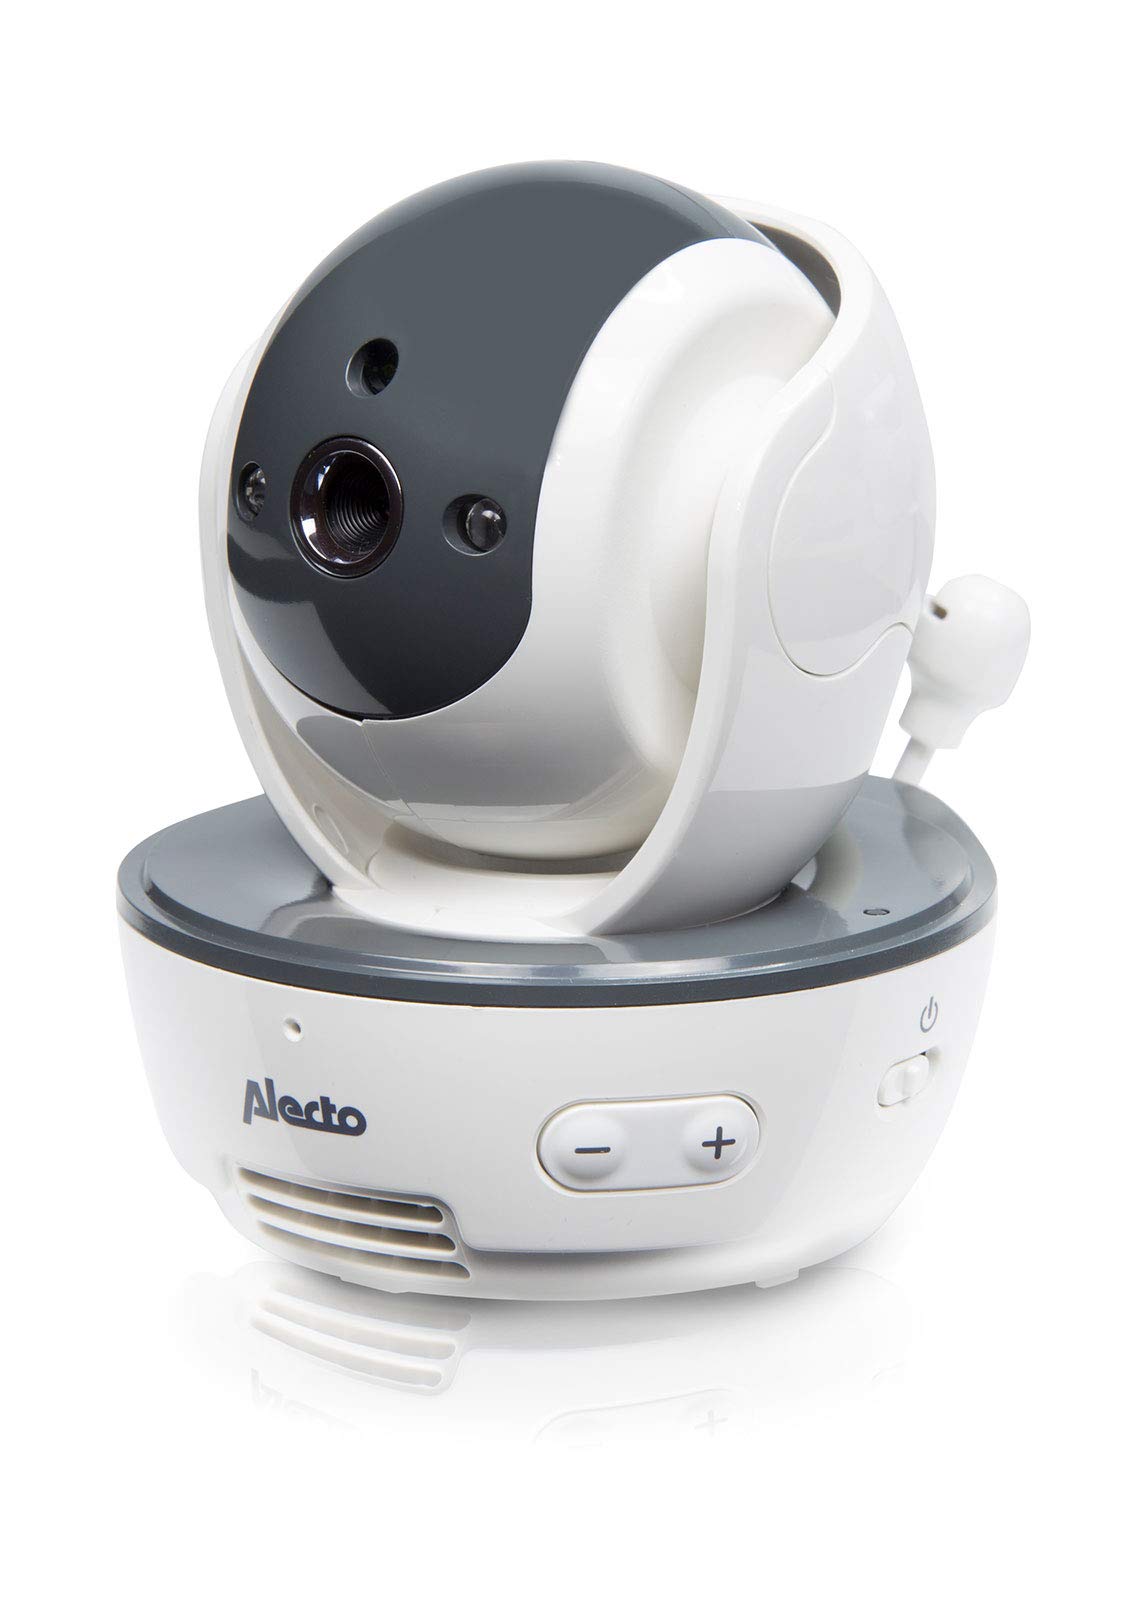 Alecto DVM-201 zusätzliche Babyphone Kamera für Alecto DVM-200 - Funk Babyphone mit steuerbarer Kamera - Indoor Babyfon mit Nachtsicht - Reichweite bis zu 300m - Weiß